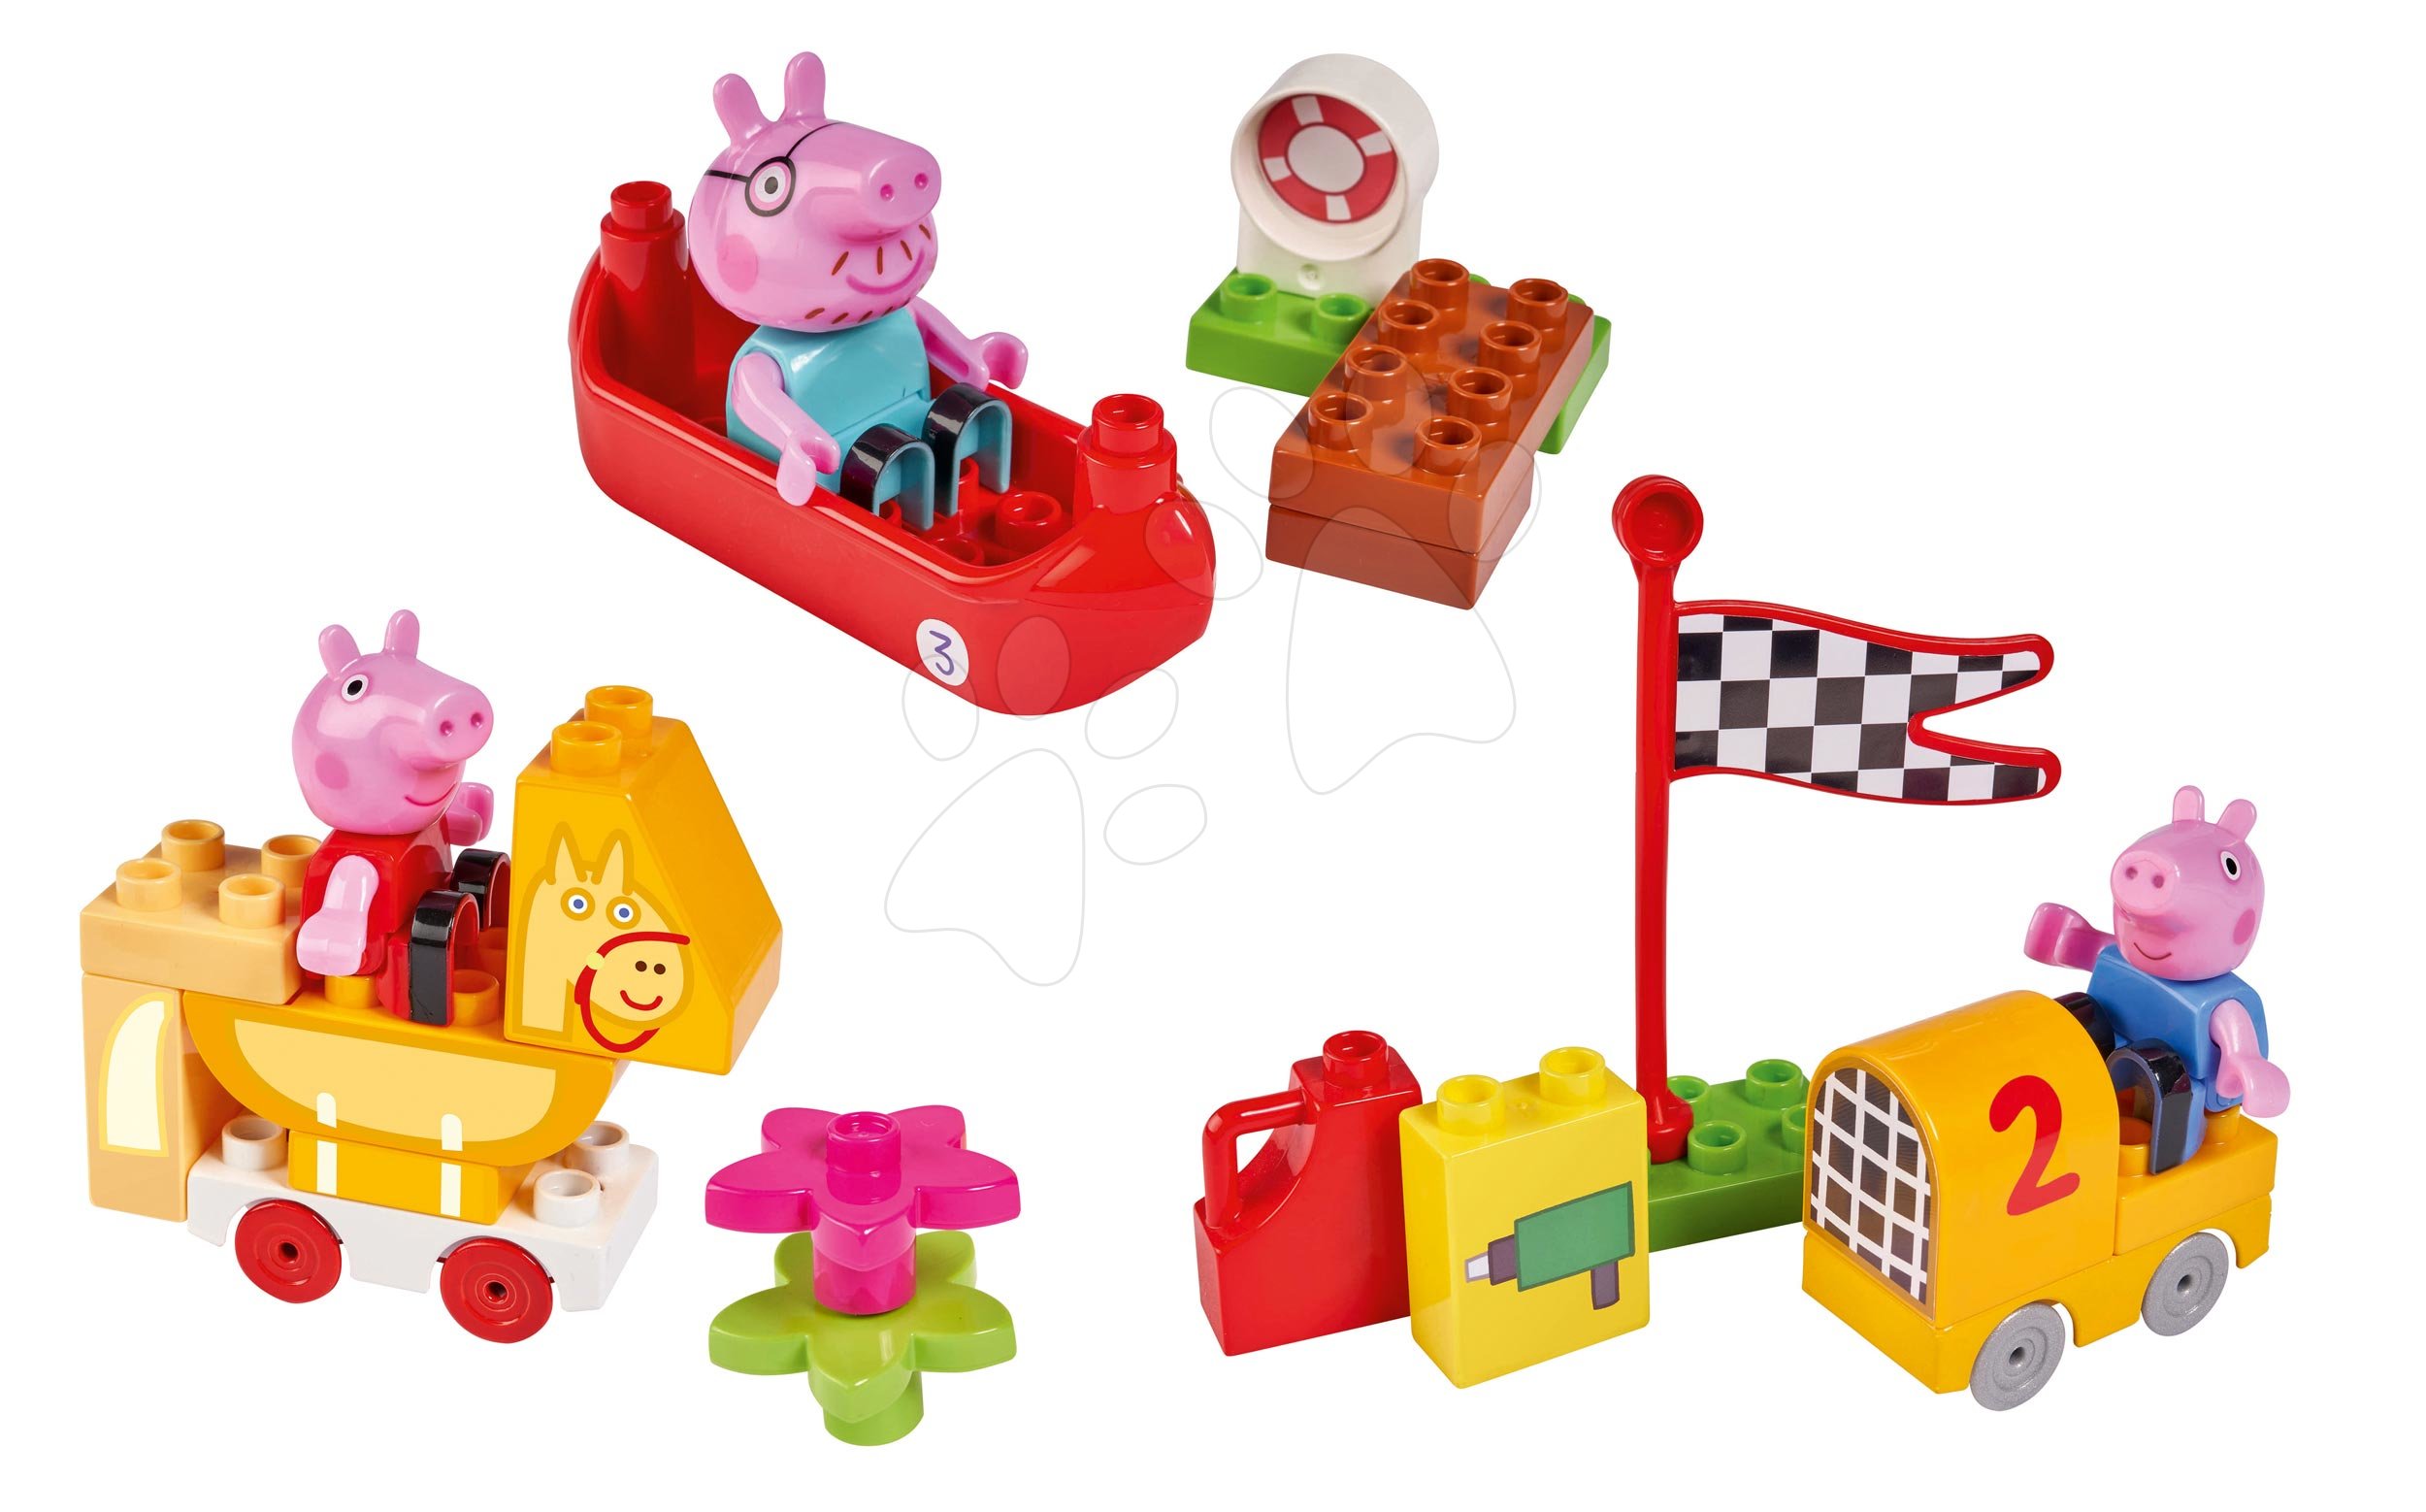 Stavebnice ako LEGO - Stavebnica Peppa Pig Starter Sets PlayBIG Bloxx s figúrkou - sada 3 druhov od 1,5-5 rokov